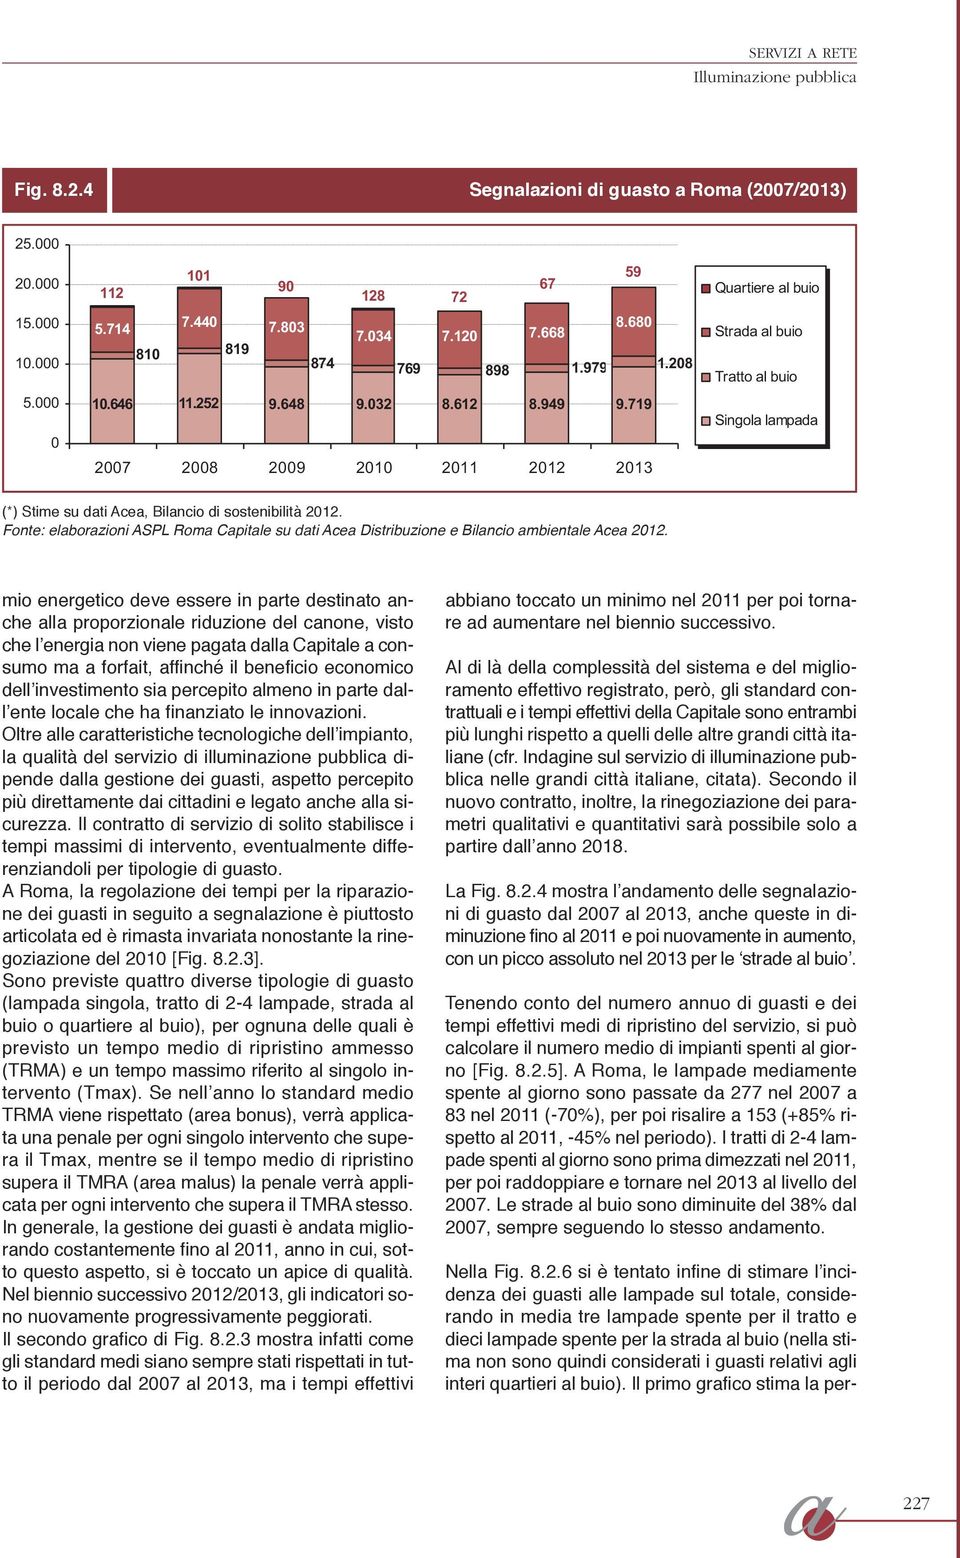 719 2007 2008 2009 2010 2011 2012 2013 Singola lampada (*) Stime su dati Acea, Bilancio di sostenibilità 2012.